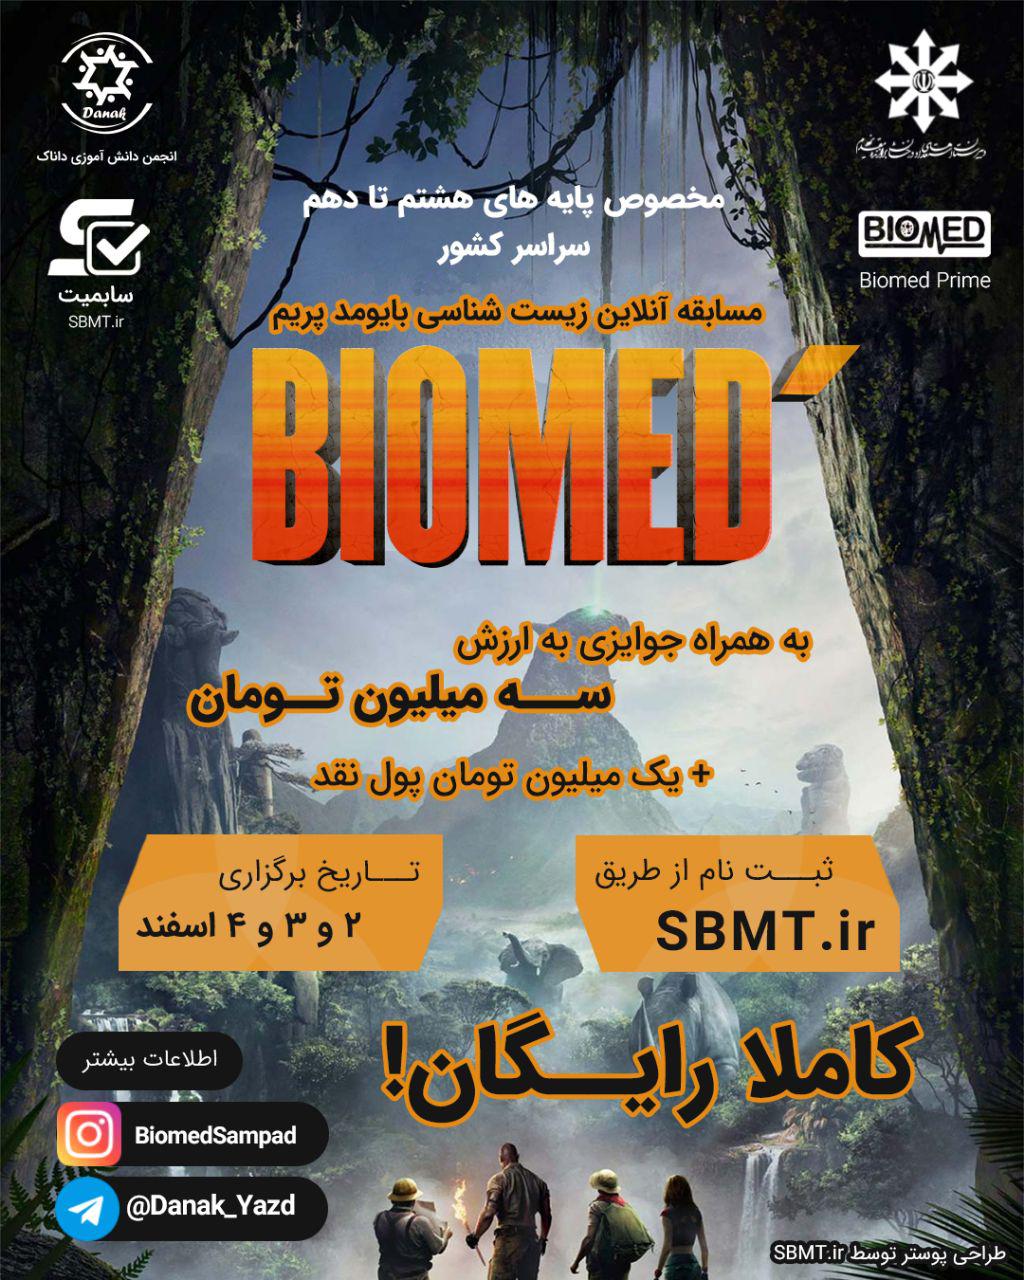 Biomed Prime